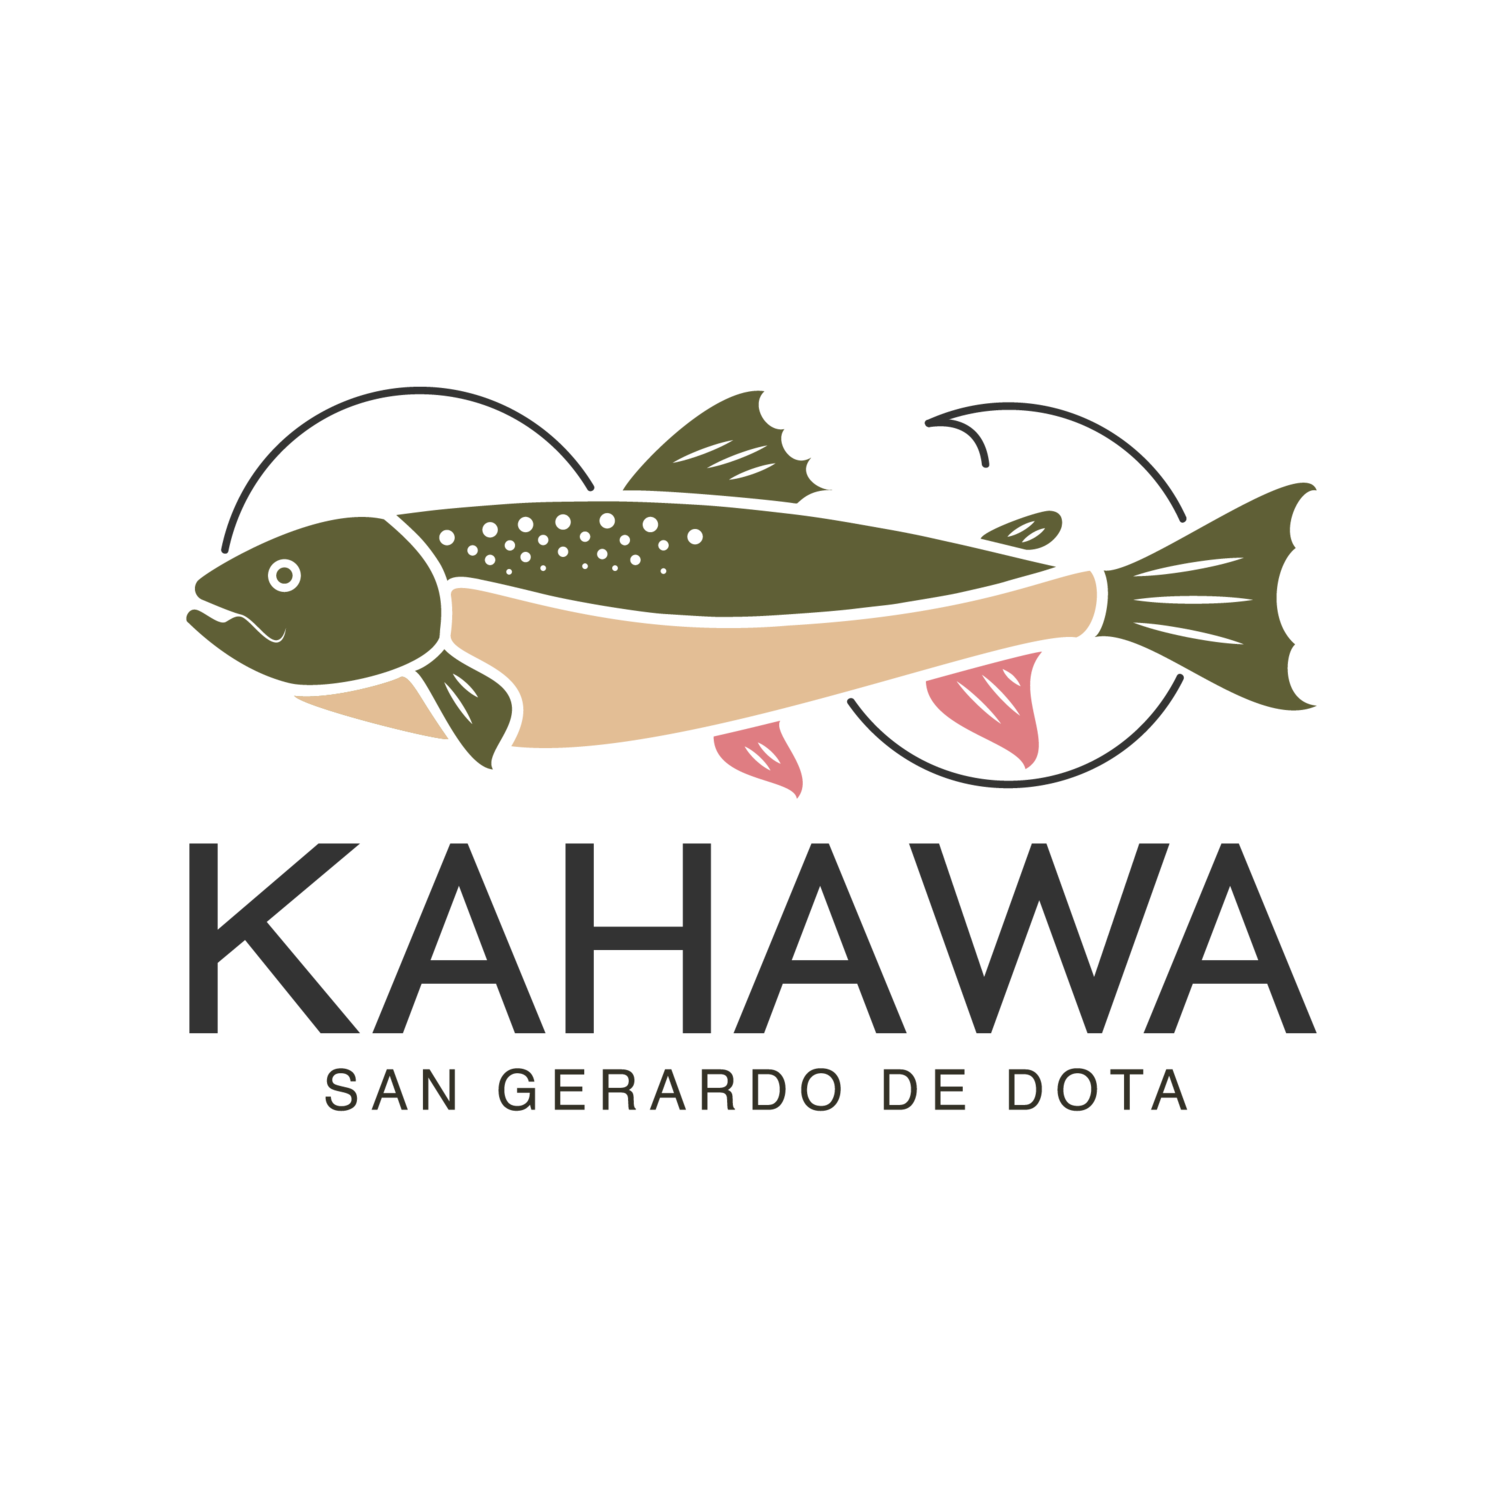 Café Kahawa